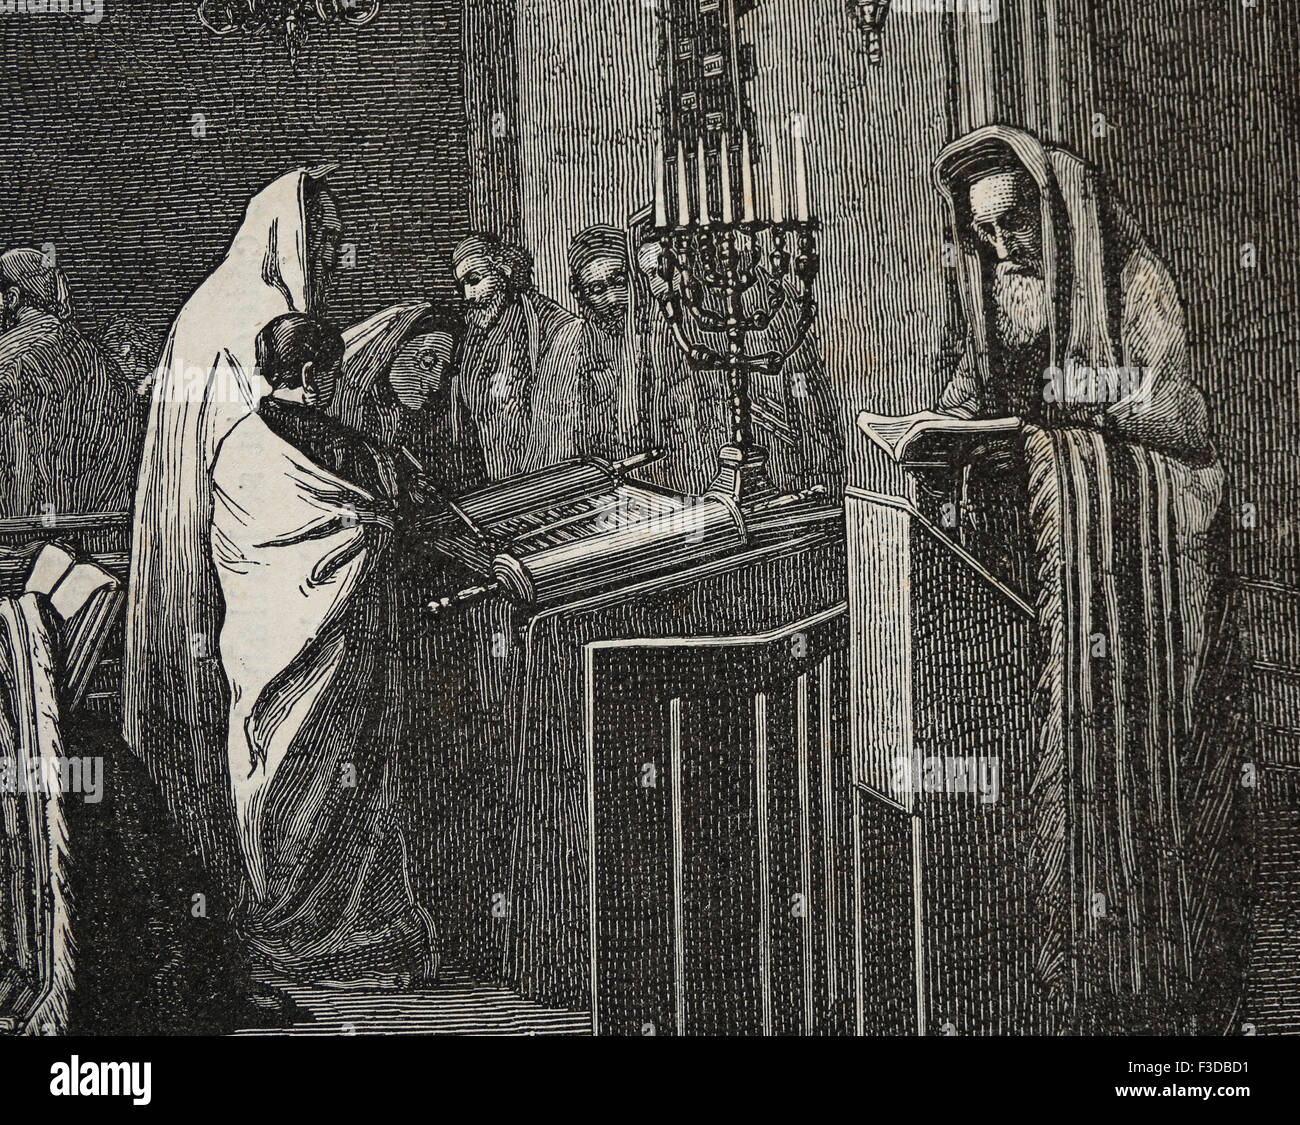 La Religion. Le judaïsme. Le rabbin est en train de lire dans la Torah à Synagogue. Gravure de froment, publié sur la Ilustracion, 1870, l'Espagne. Banque D'Images